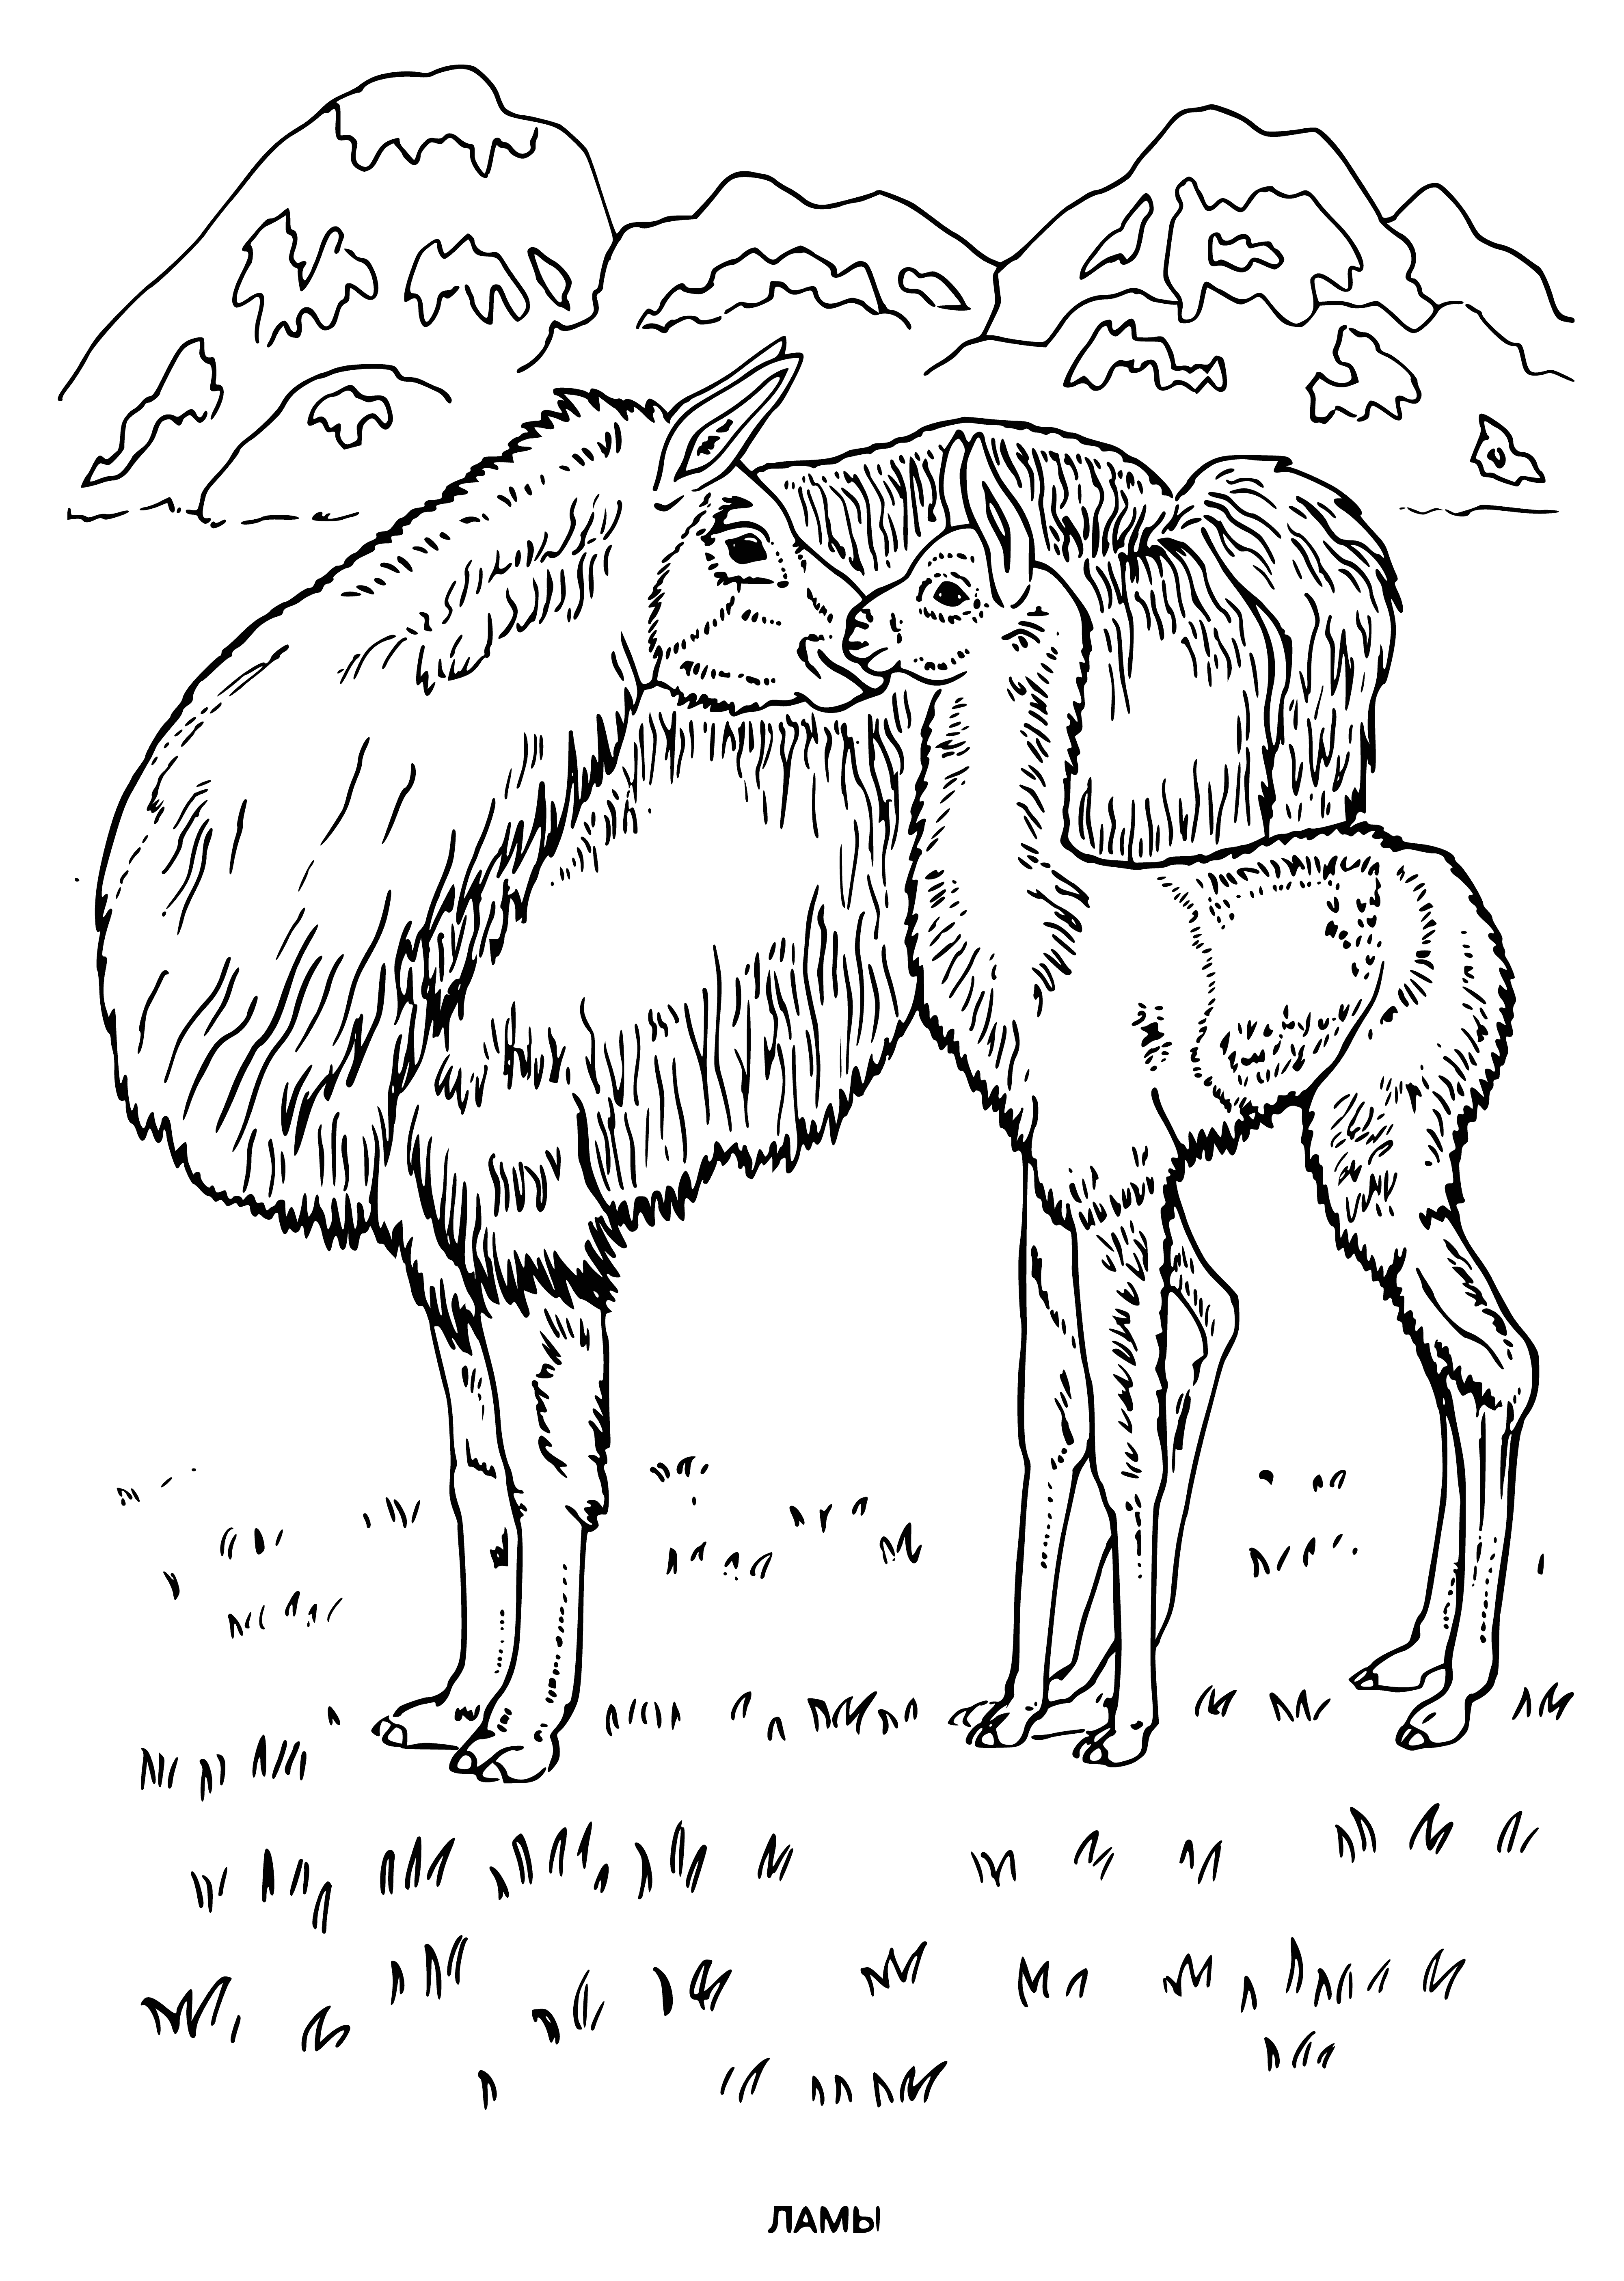 Llamas coloring page